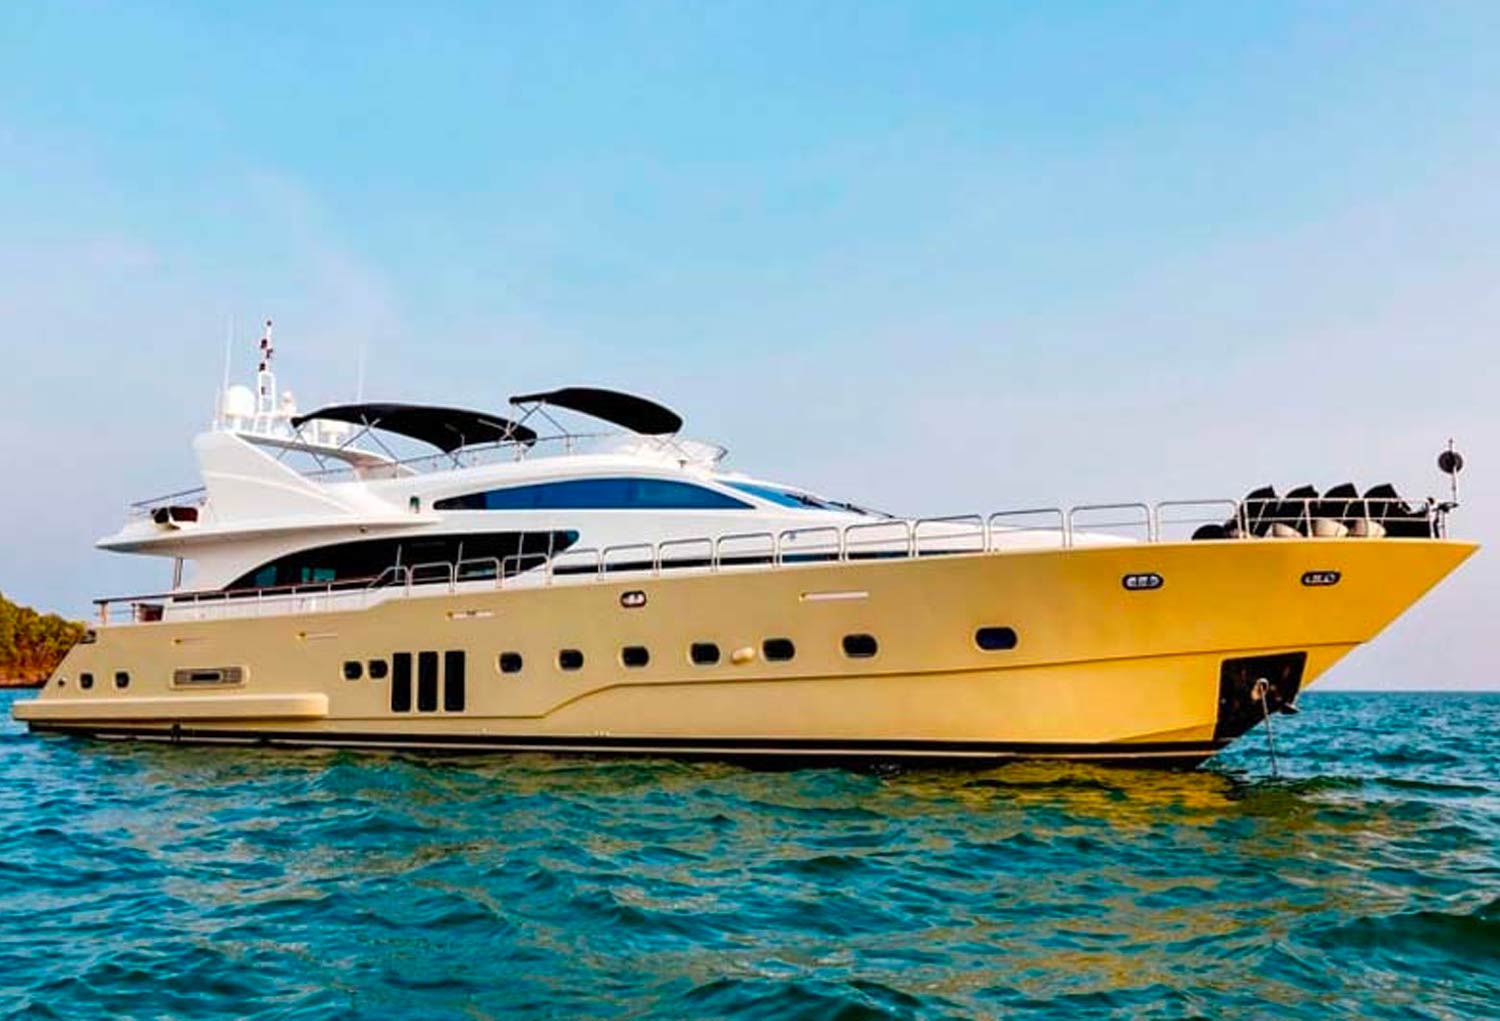 Yacht rental Krabi, yacht charter krabi